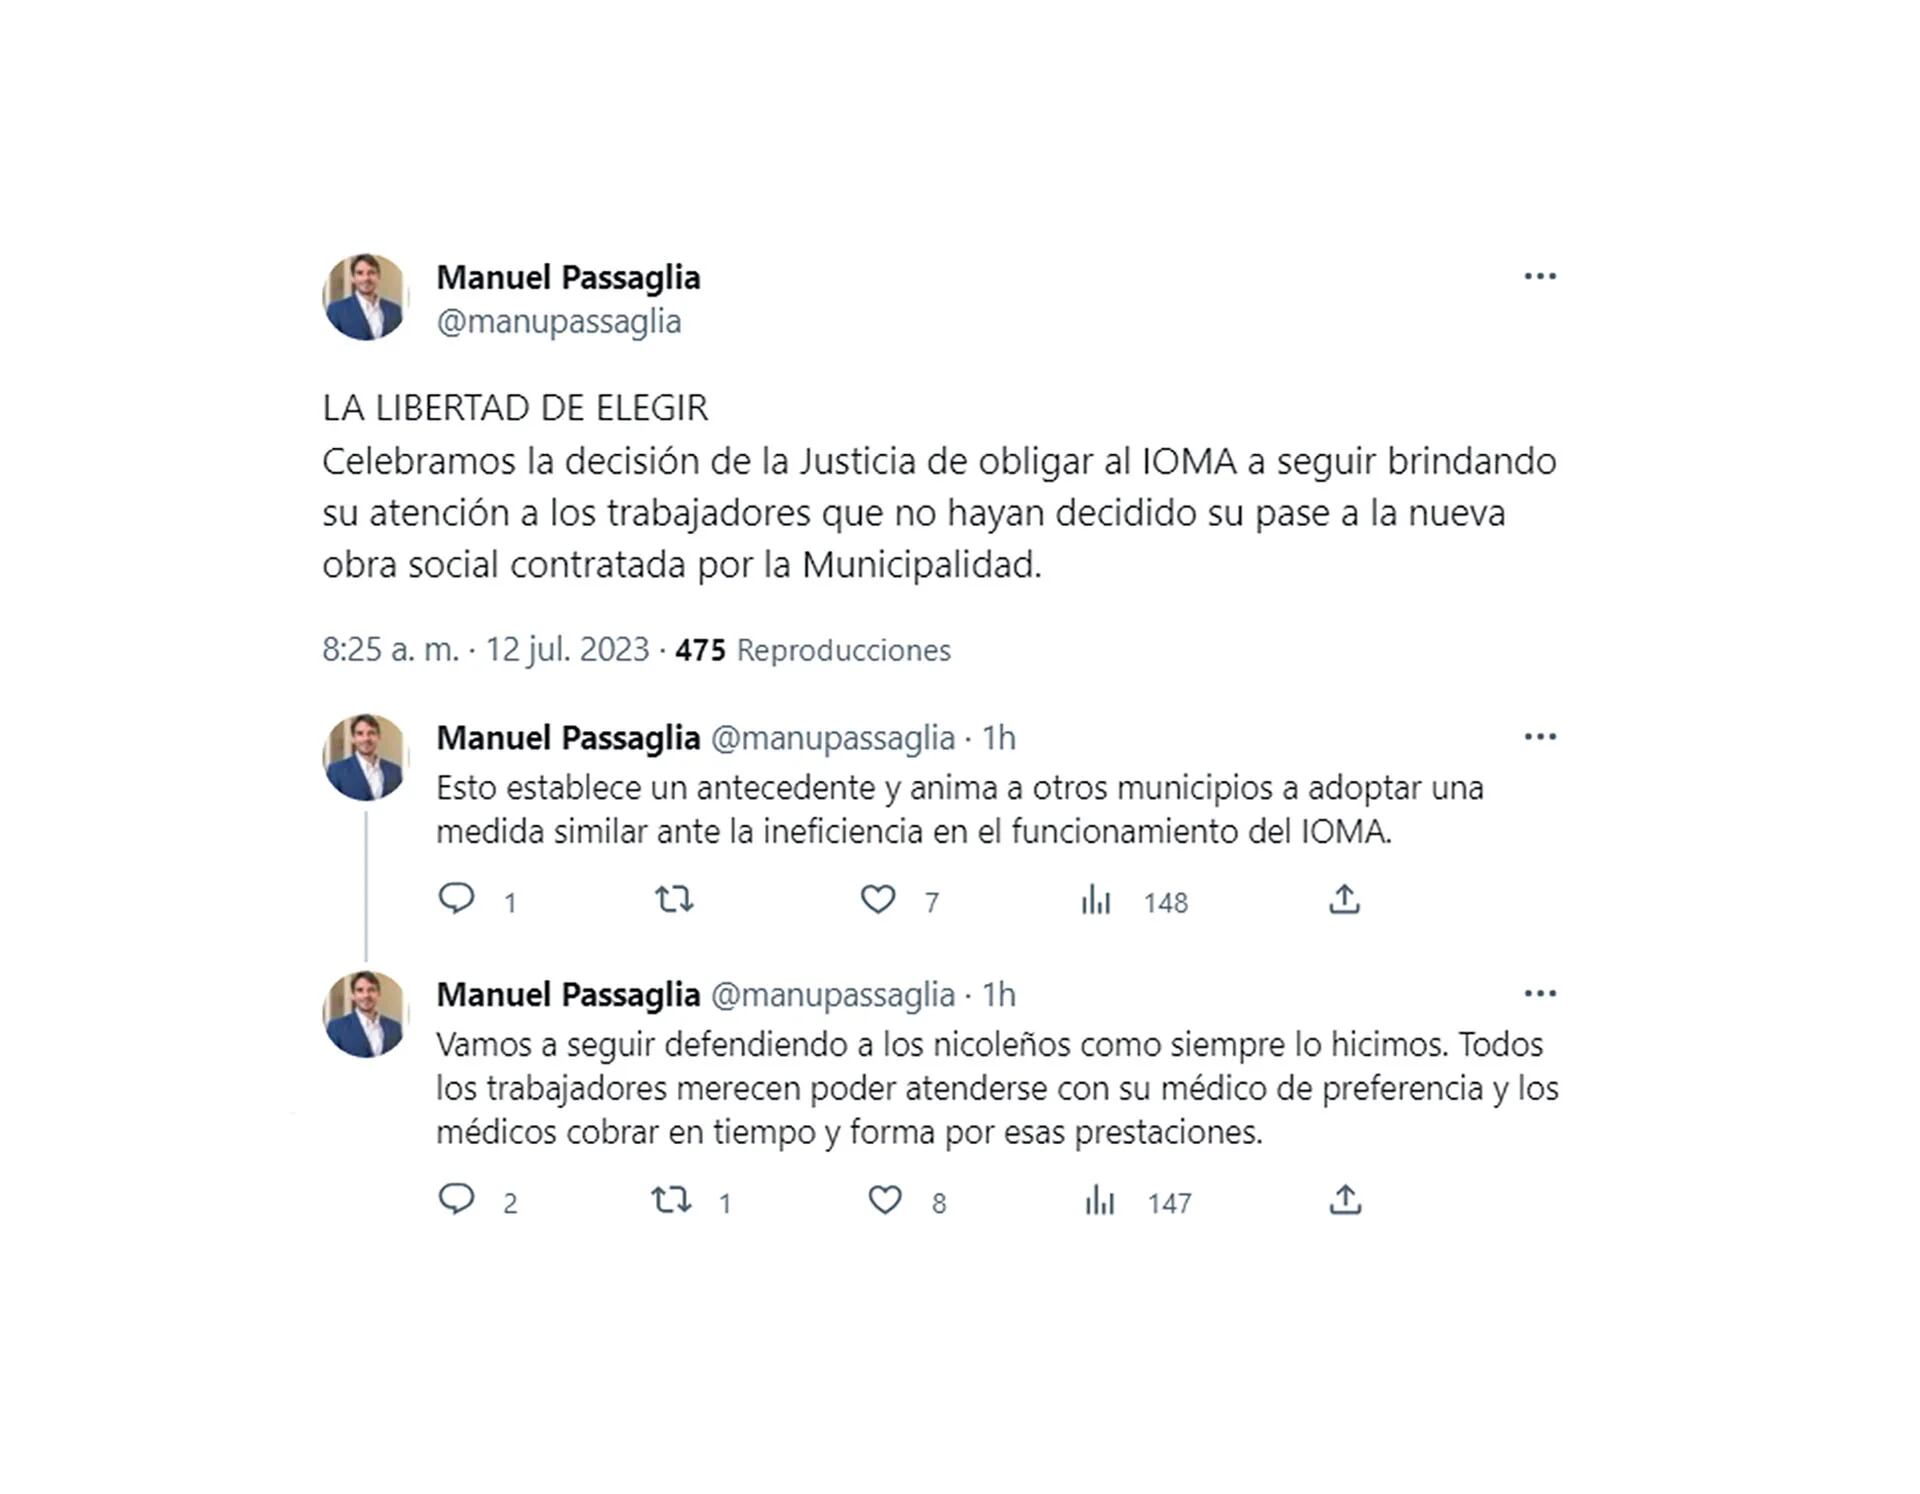 El mensaje del intendente Manuel Passaglia por las redes sociales 